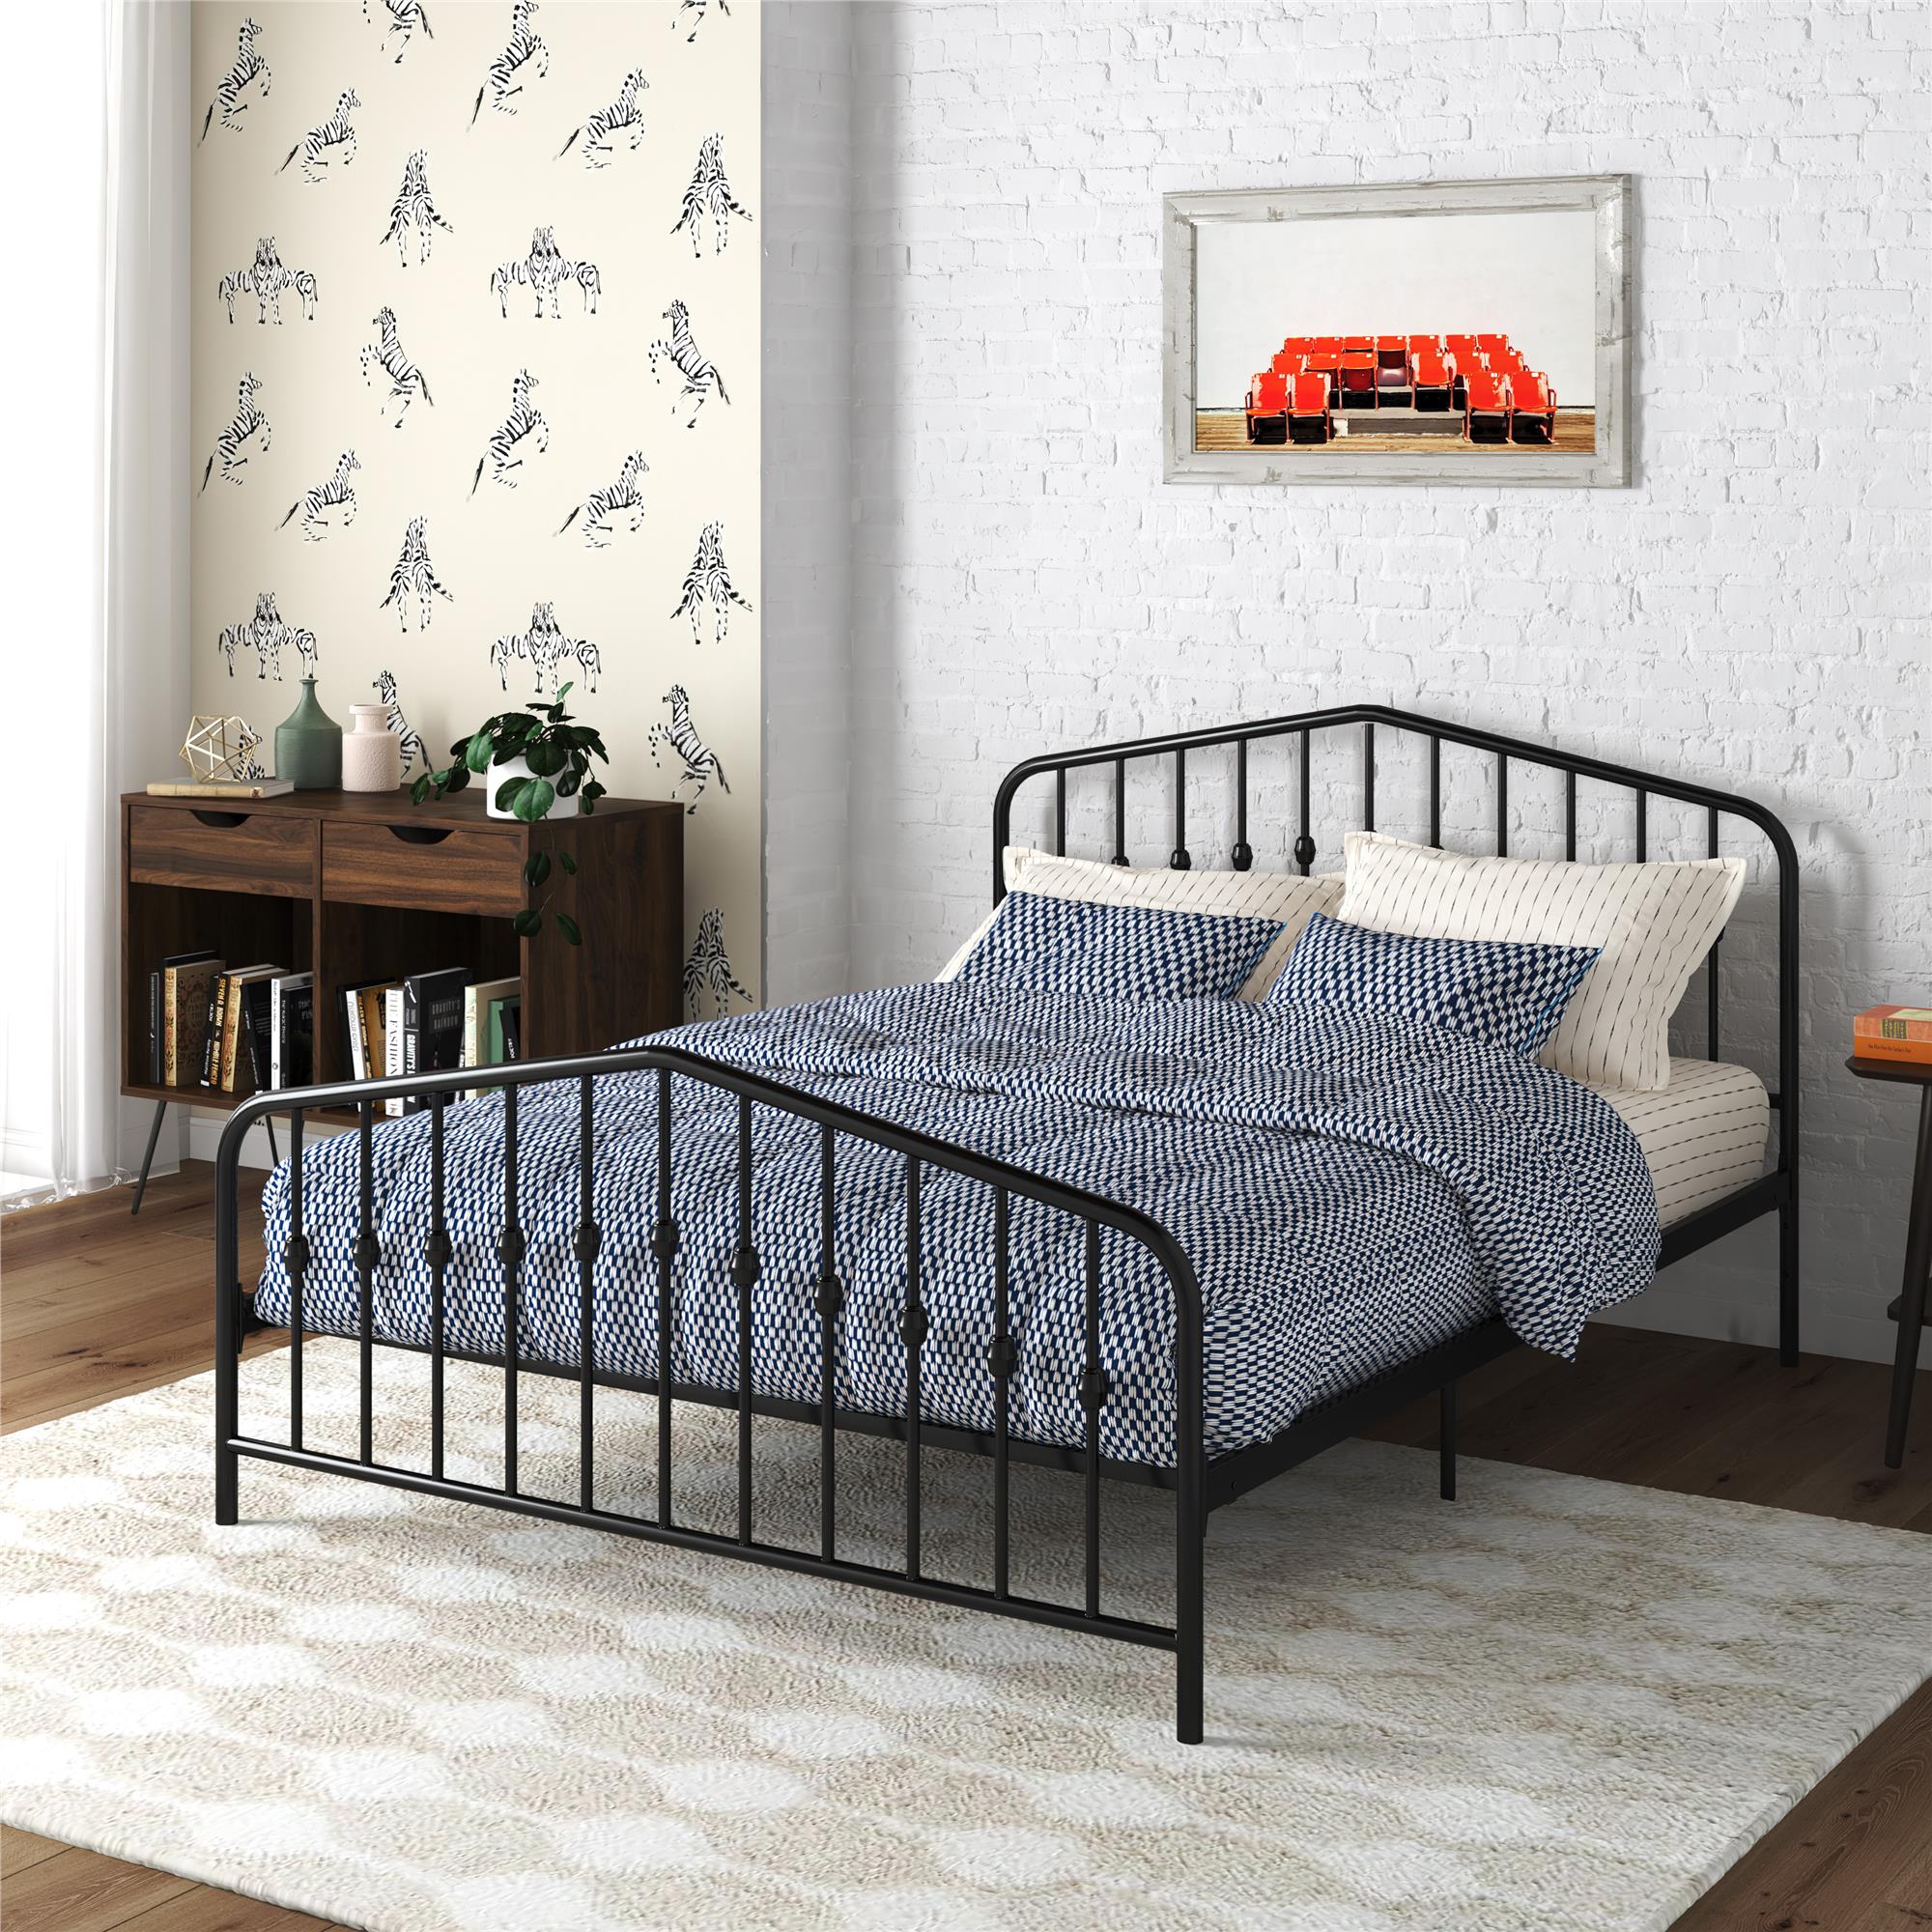 Novogratz Bushwick Metal Platform Bed and Adjustable Frame, Full, Black - image 1 of 19